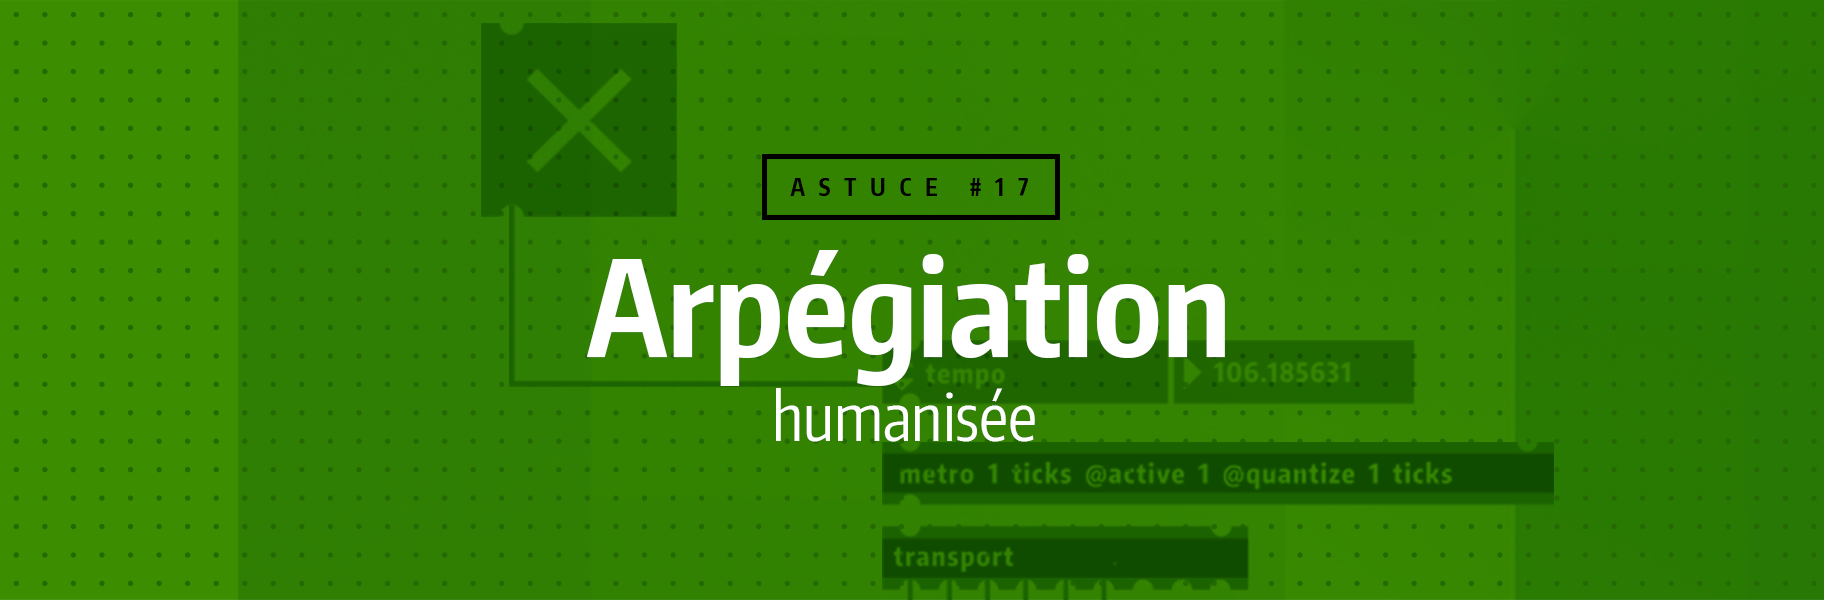 Astuce rapide #17 : Arpégiation humanisée